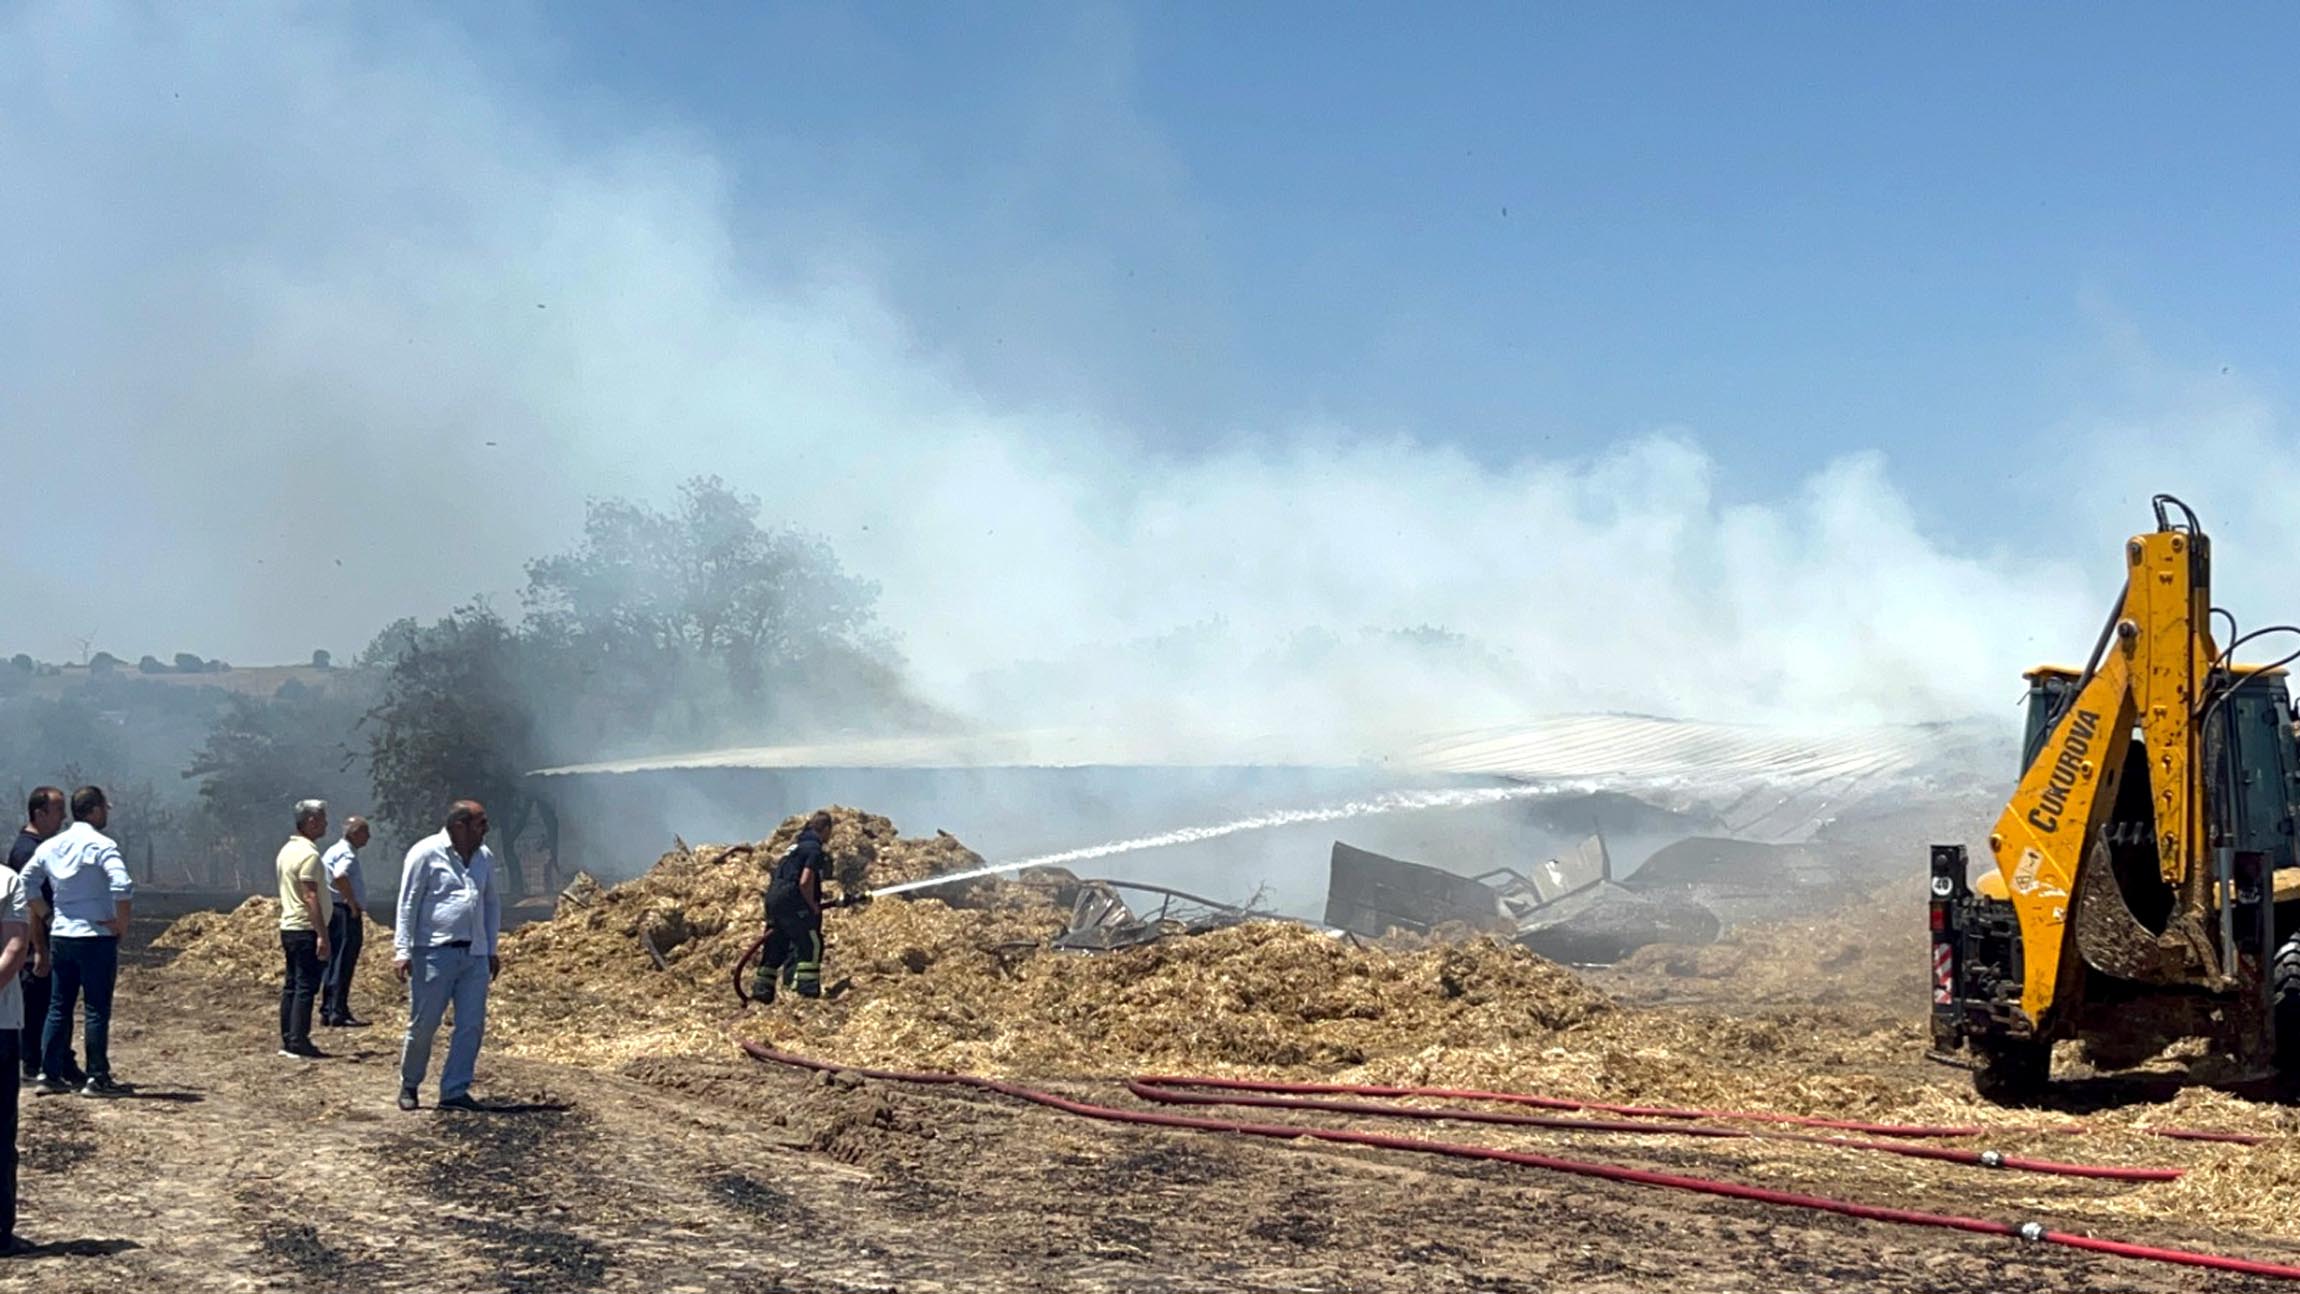 Tekirdağ'da 180 dönüm ekili buğday yandı; 3 kişi dumandan etkilendi